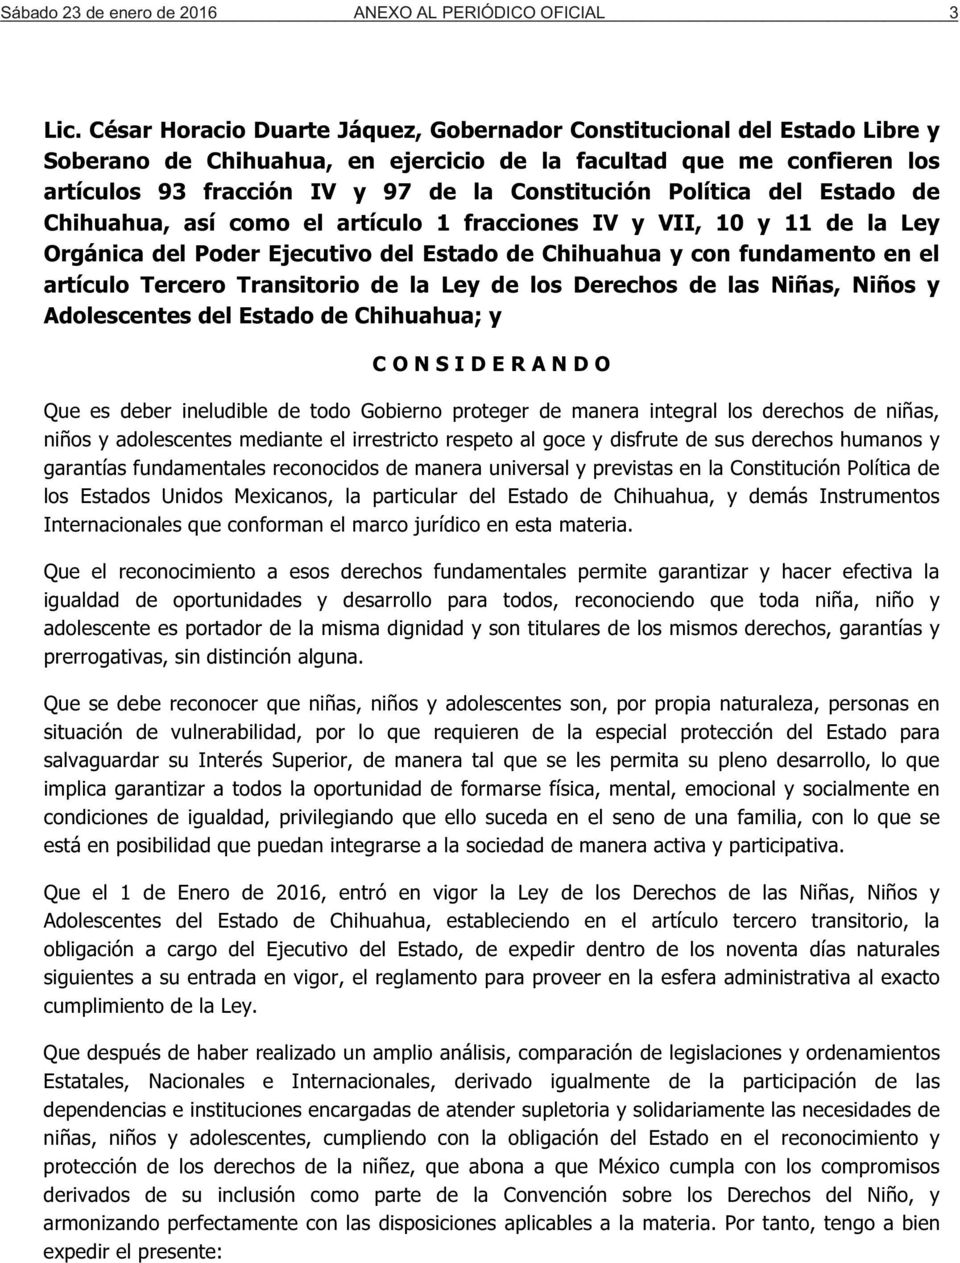 Política del Estado de Chihuahua, así como el artículo 1 fracciones IV y VII, 10 y 11 de la Ley Orgánica del Poder Ejecutivo del Estado de Chihuahua y con fundamento en el artículo Tercero